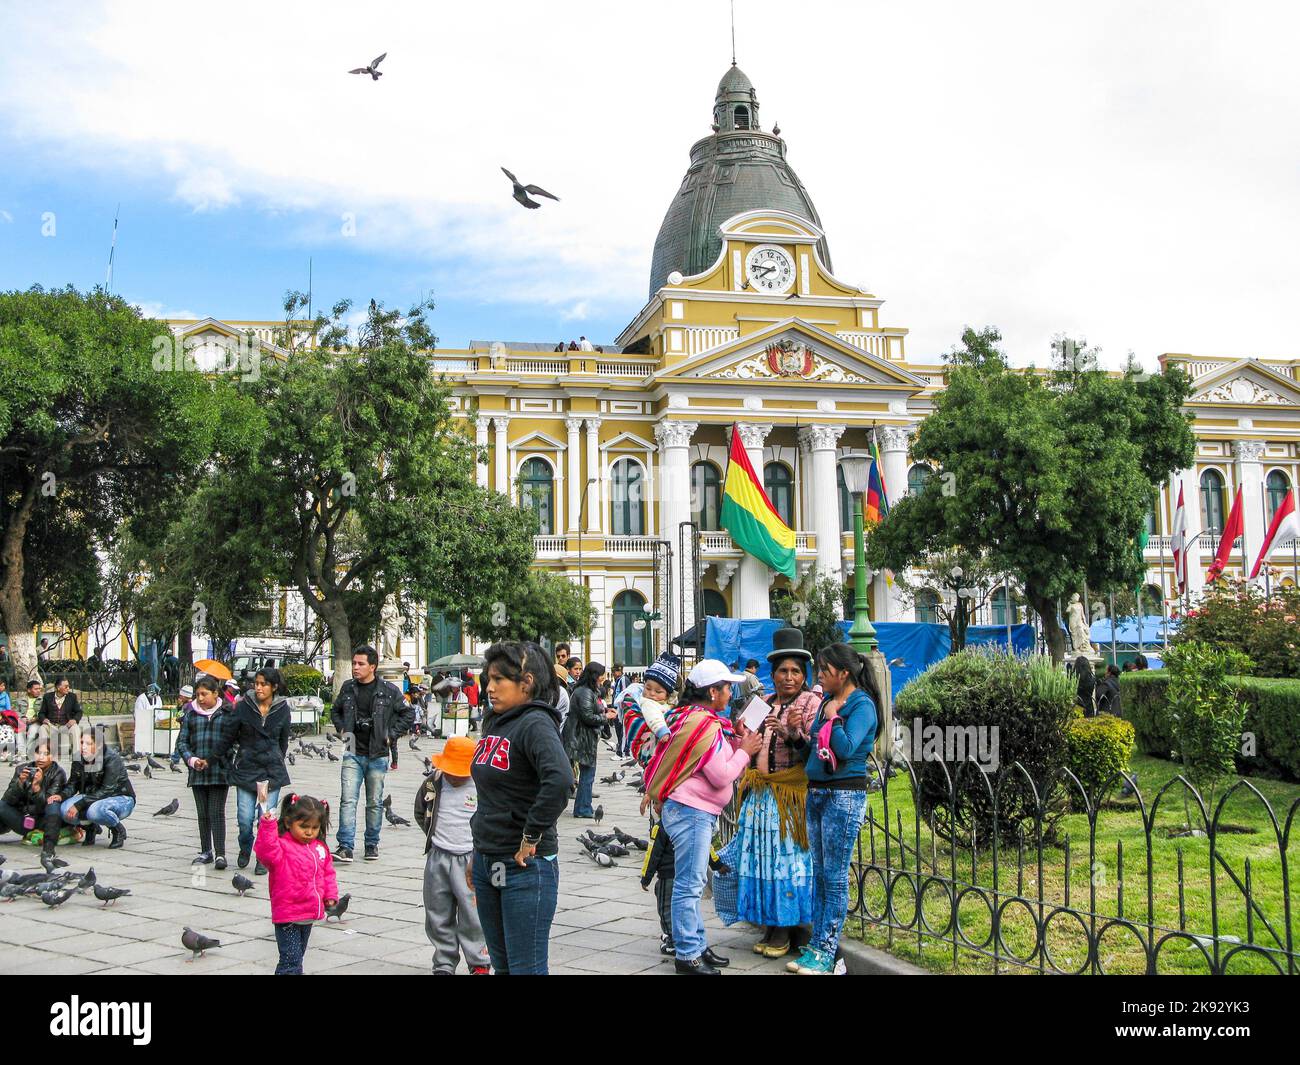 LA PAZ, BOLIVIE - 21 JANVIER 2015: Les gens au Palais législatif, siège du gouvernement depuis 1905, sur la Plaza Murillo dans la ville de la Paz, Bolivie. Banque D'Images